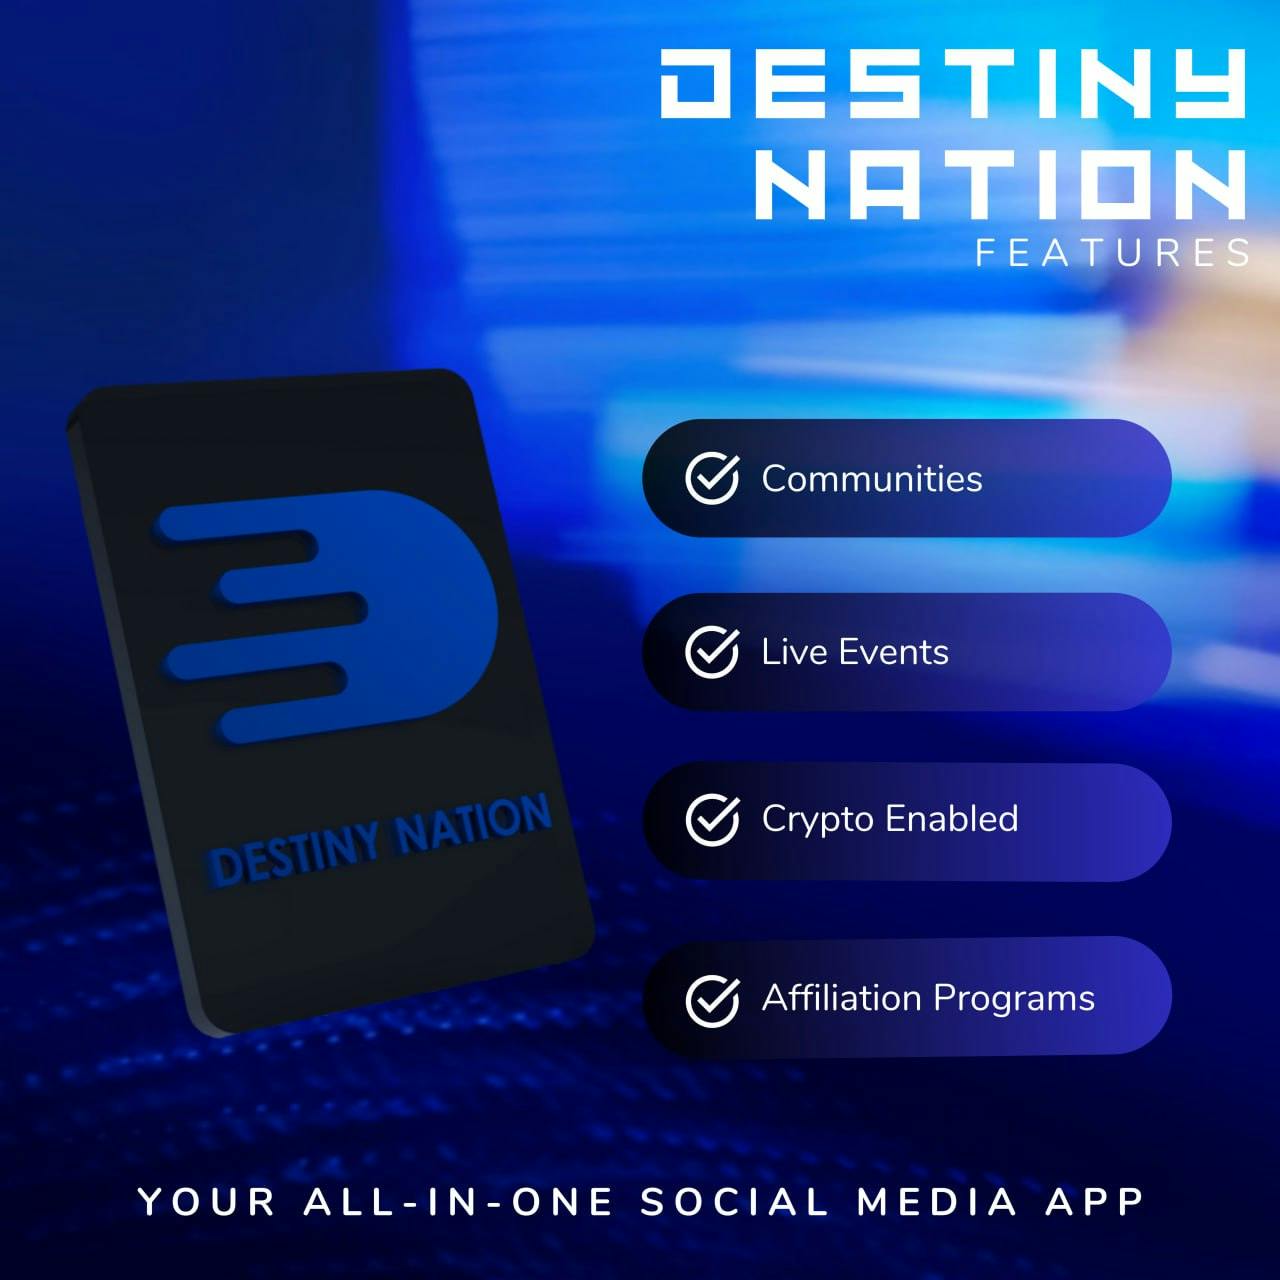 Destiny Nation Features